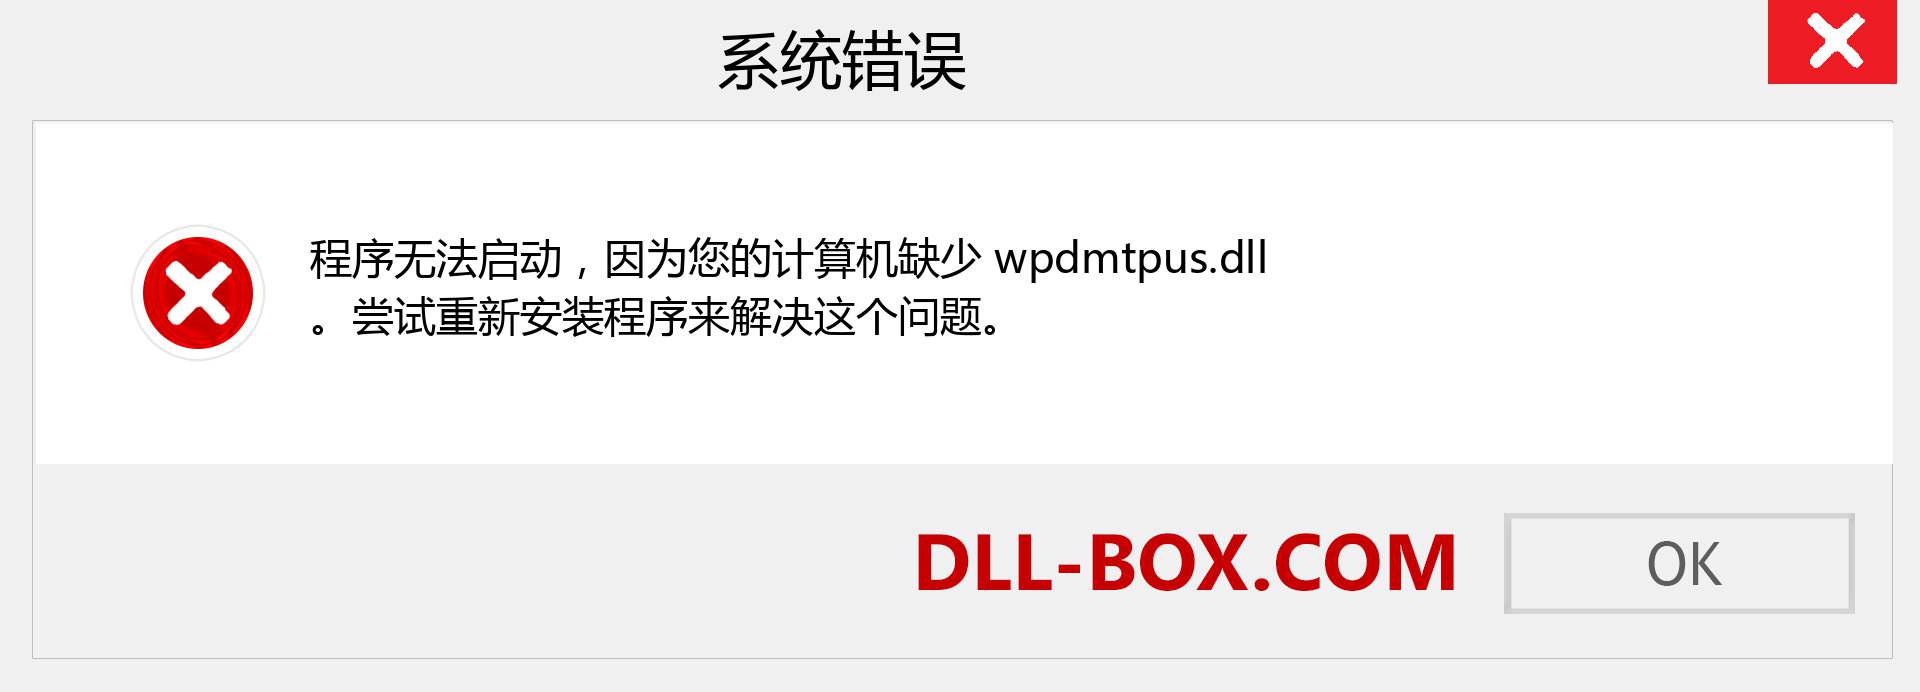 wpdmtpus.dll 文件丢失？。 适用于 Windows 7、8、10 的下载 - 修复 Windows、照片、图像上的 wpdmtpus dll 丢失错误